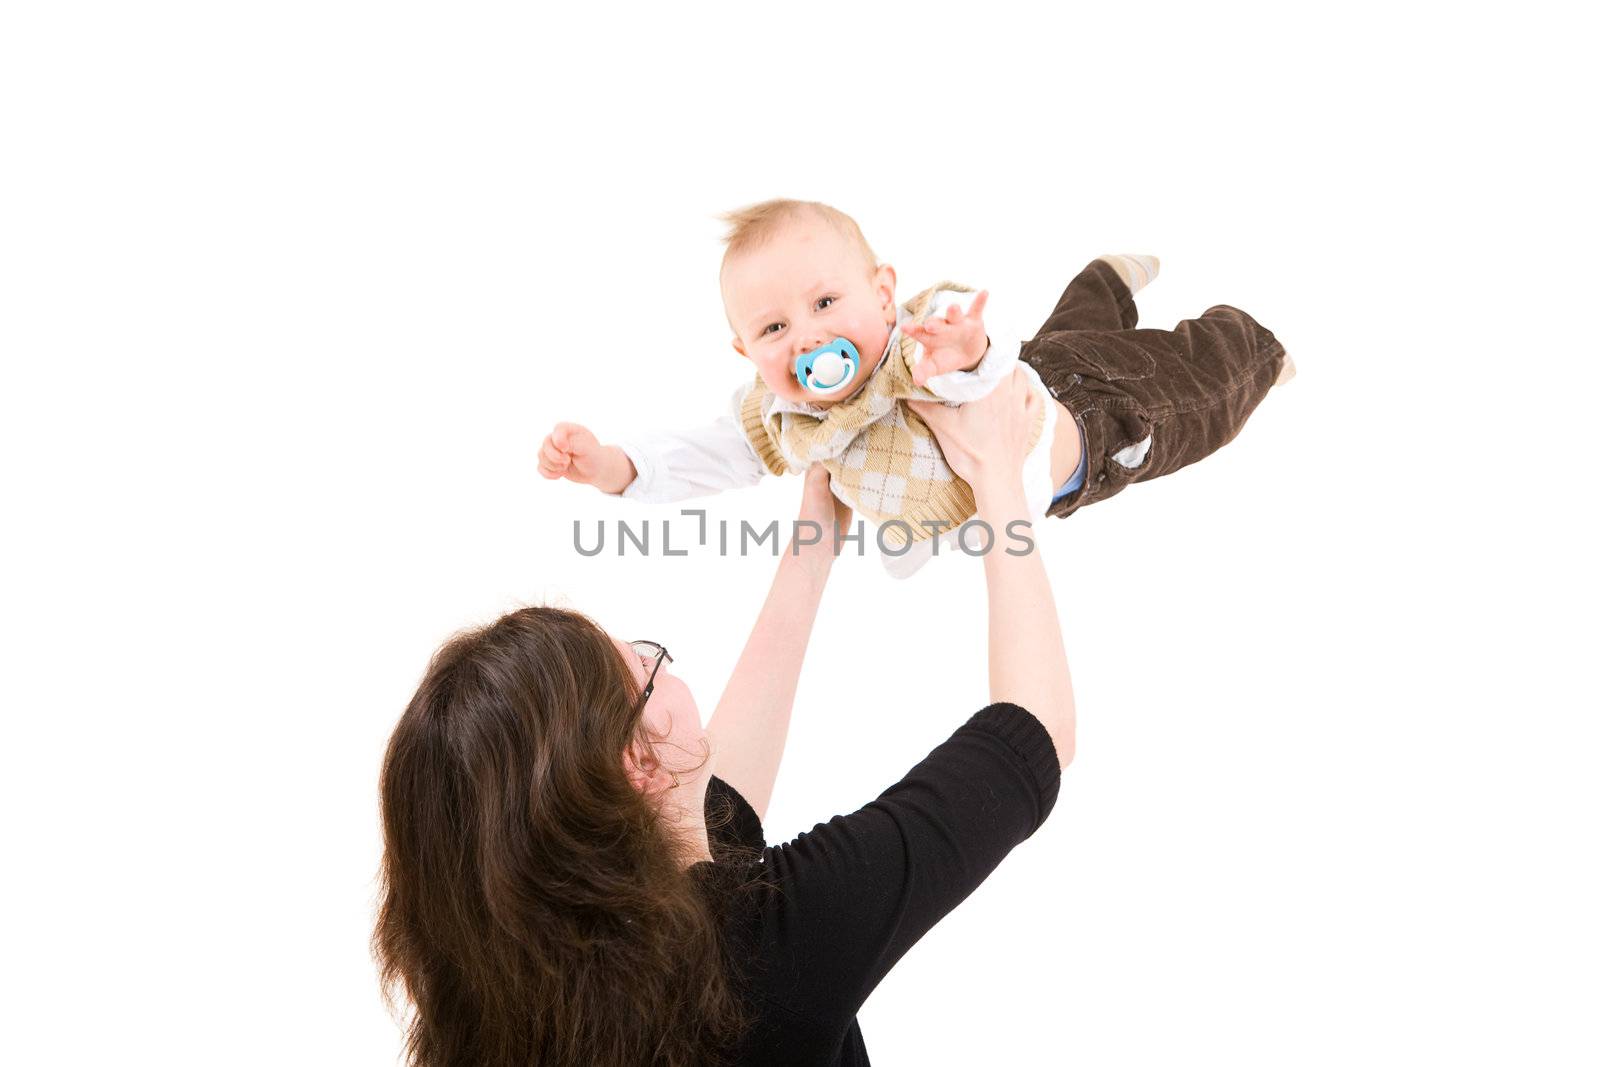 Mum throws the son in air